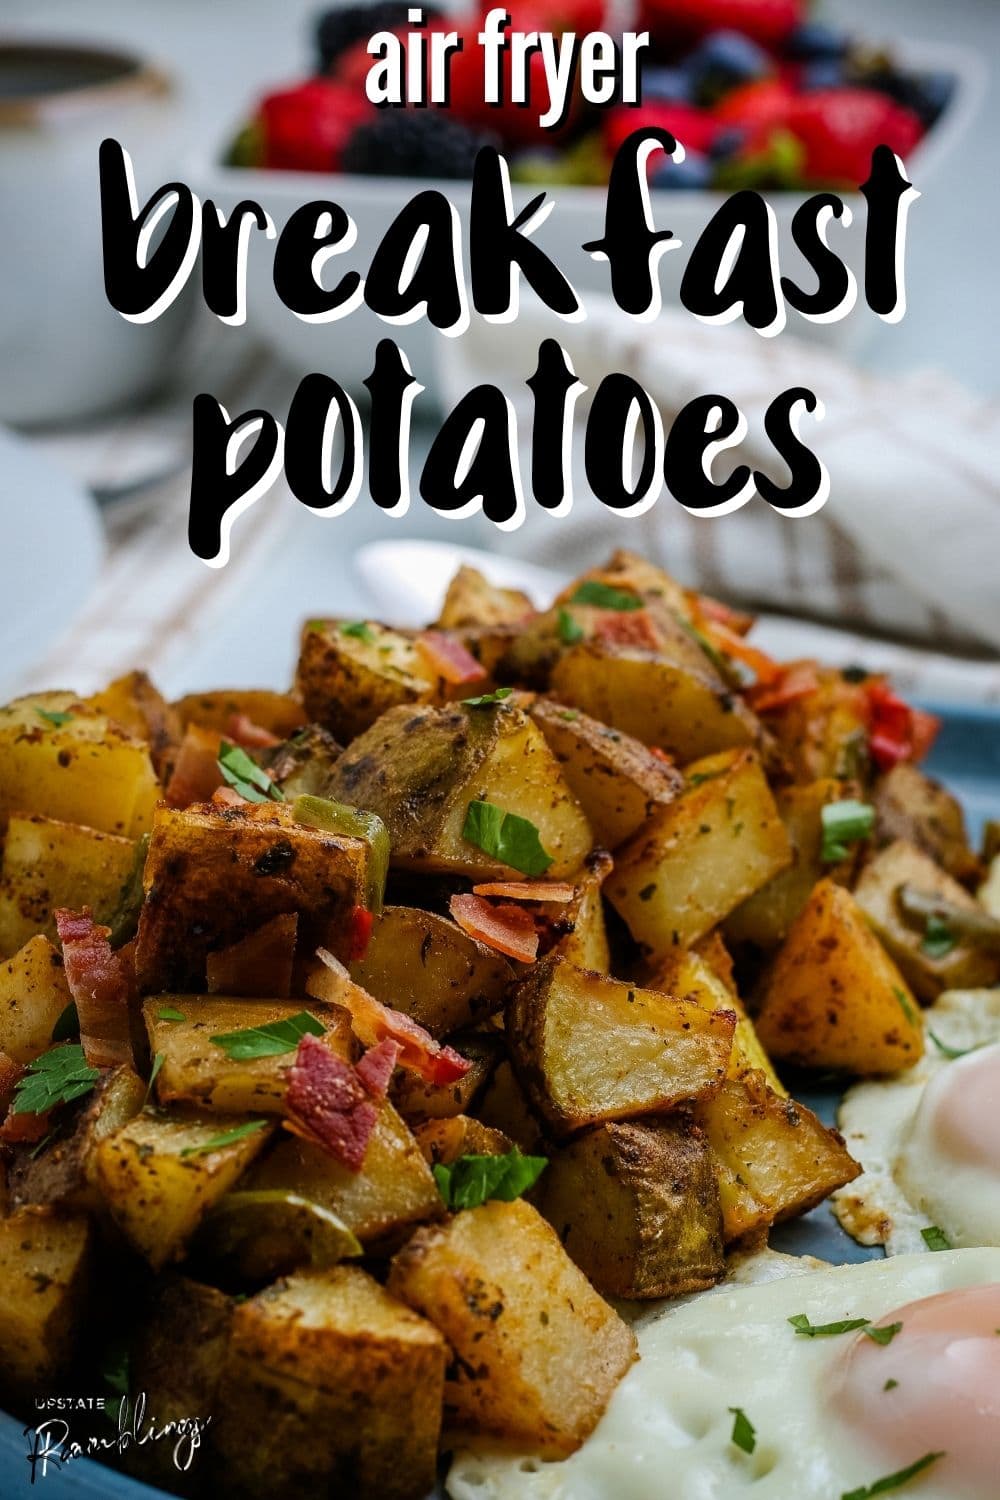 Air Fryer Breakfast Potatoes - Home Fries - Upstate Ramblings